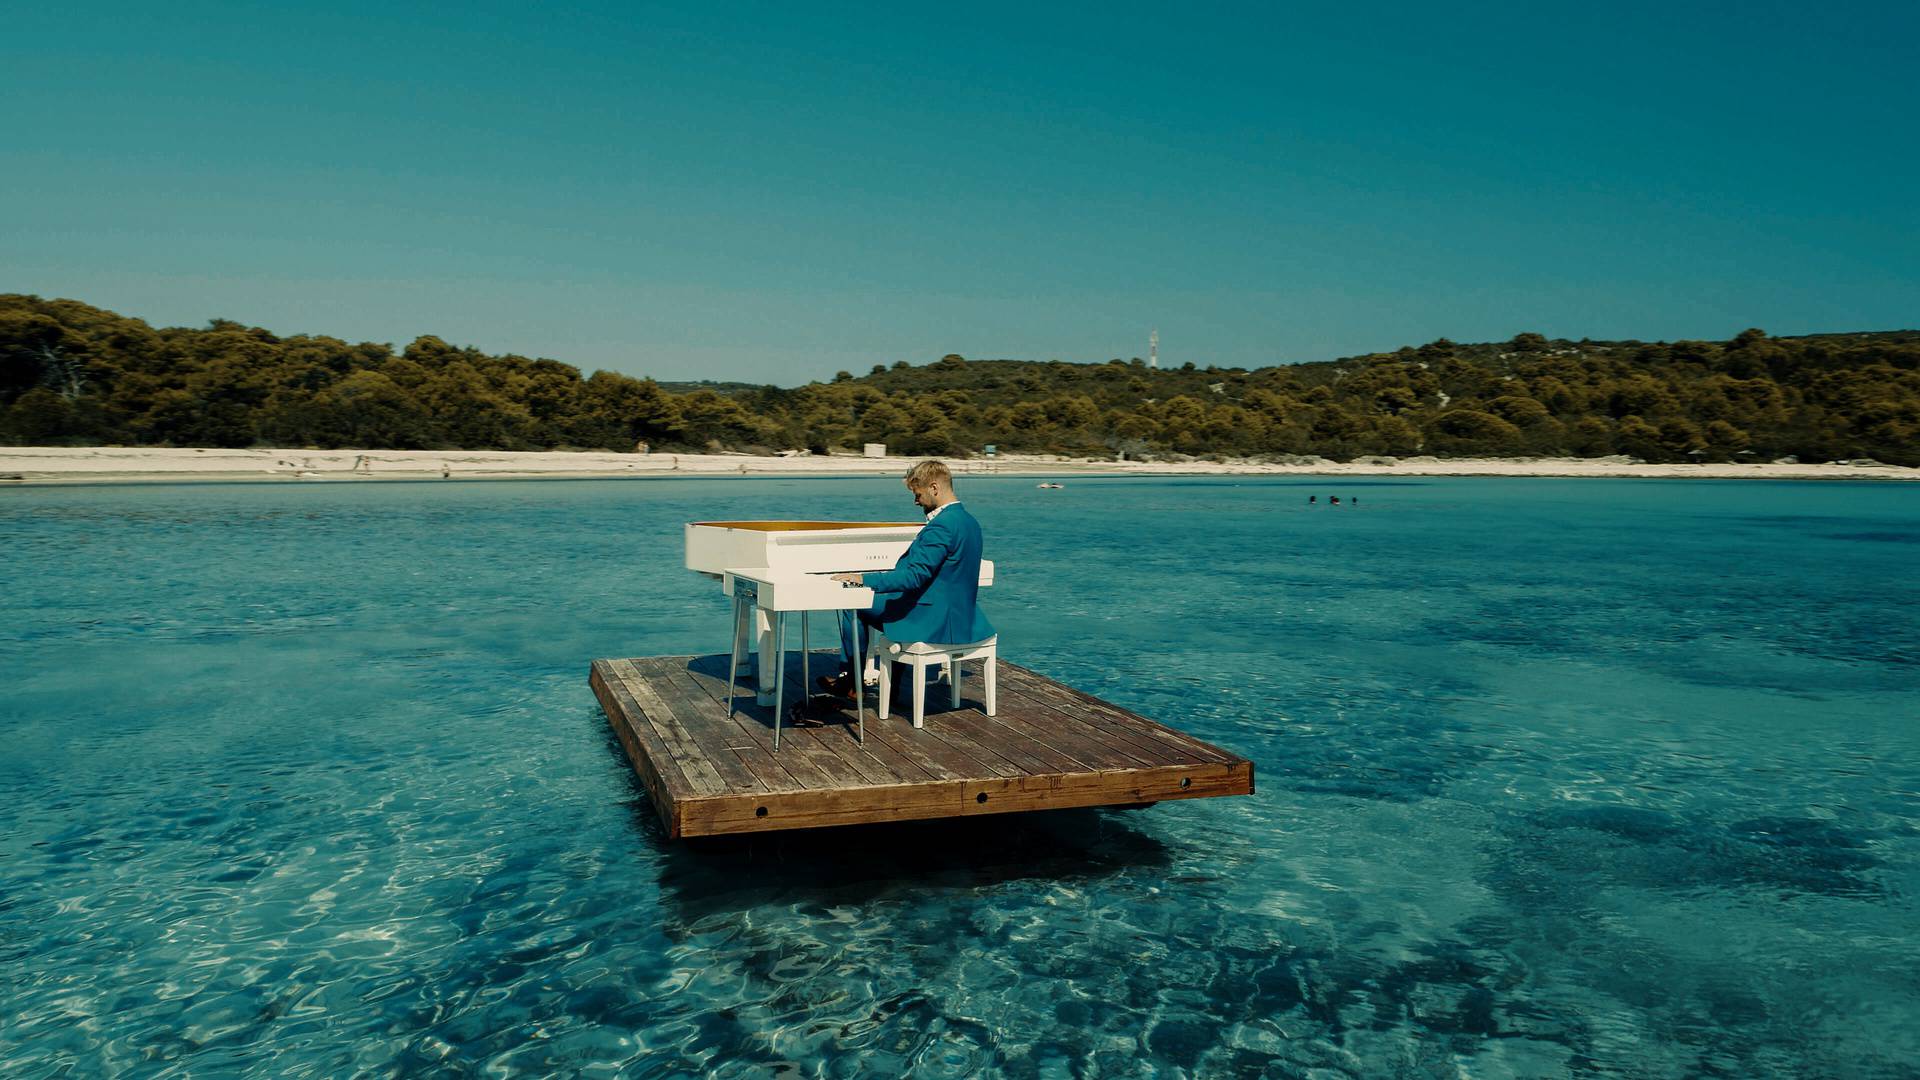 Pijanist uplovio s klavirom u more: 'Za sve velike stvari  u životu moraš pomalo biti i lud'